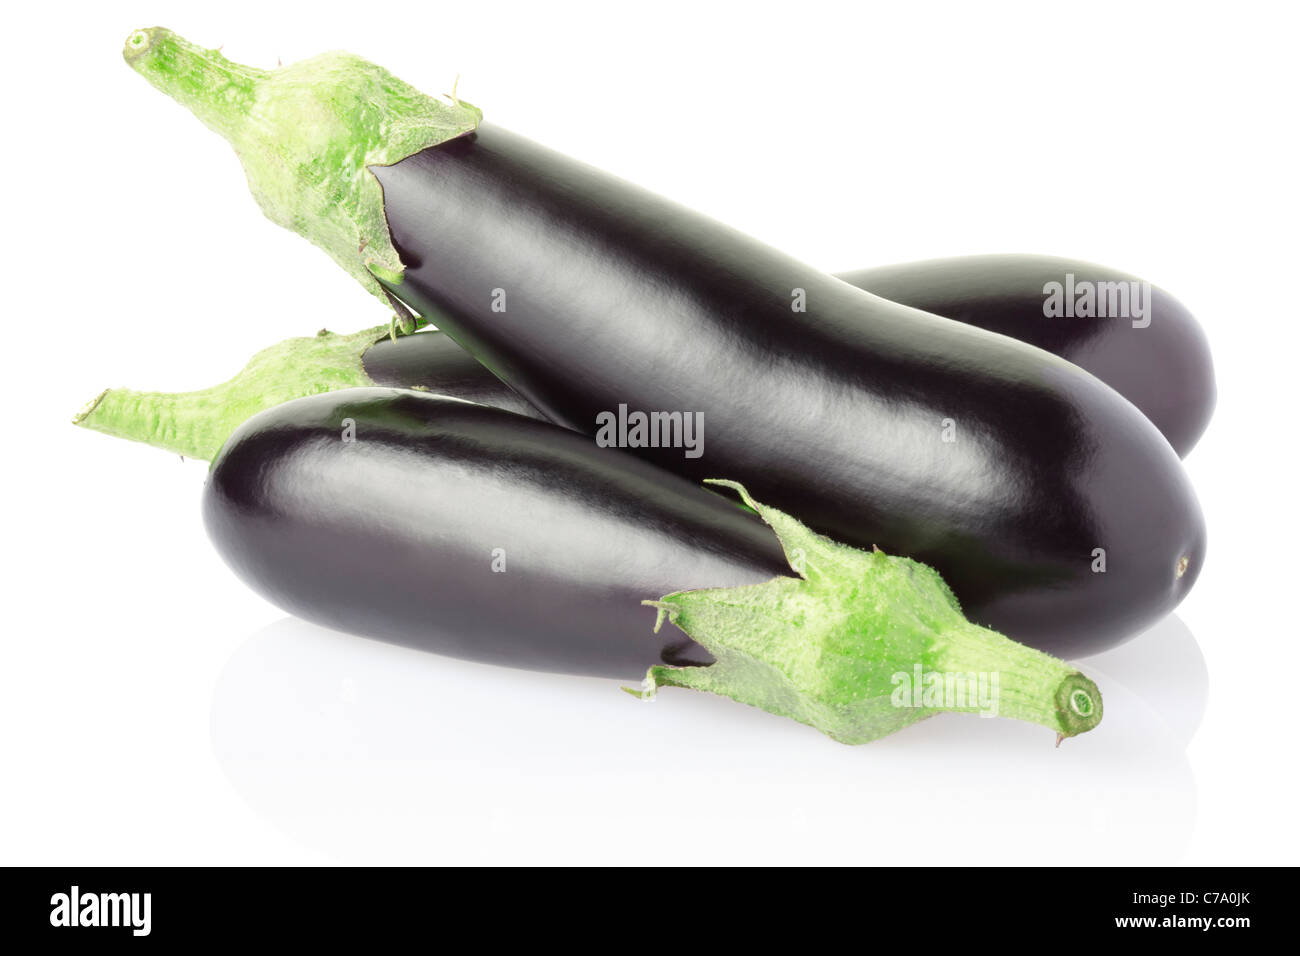 Aubergine or eggplant Stock Photo